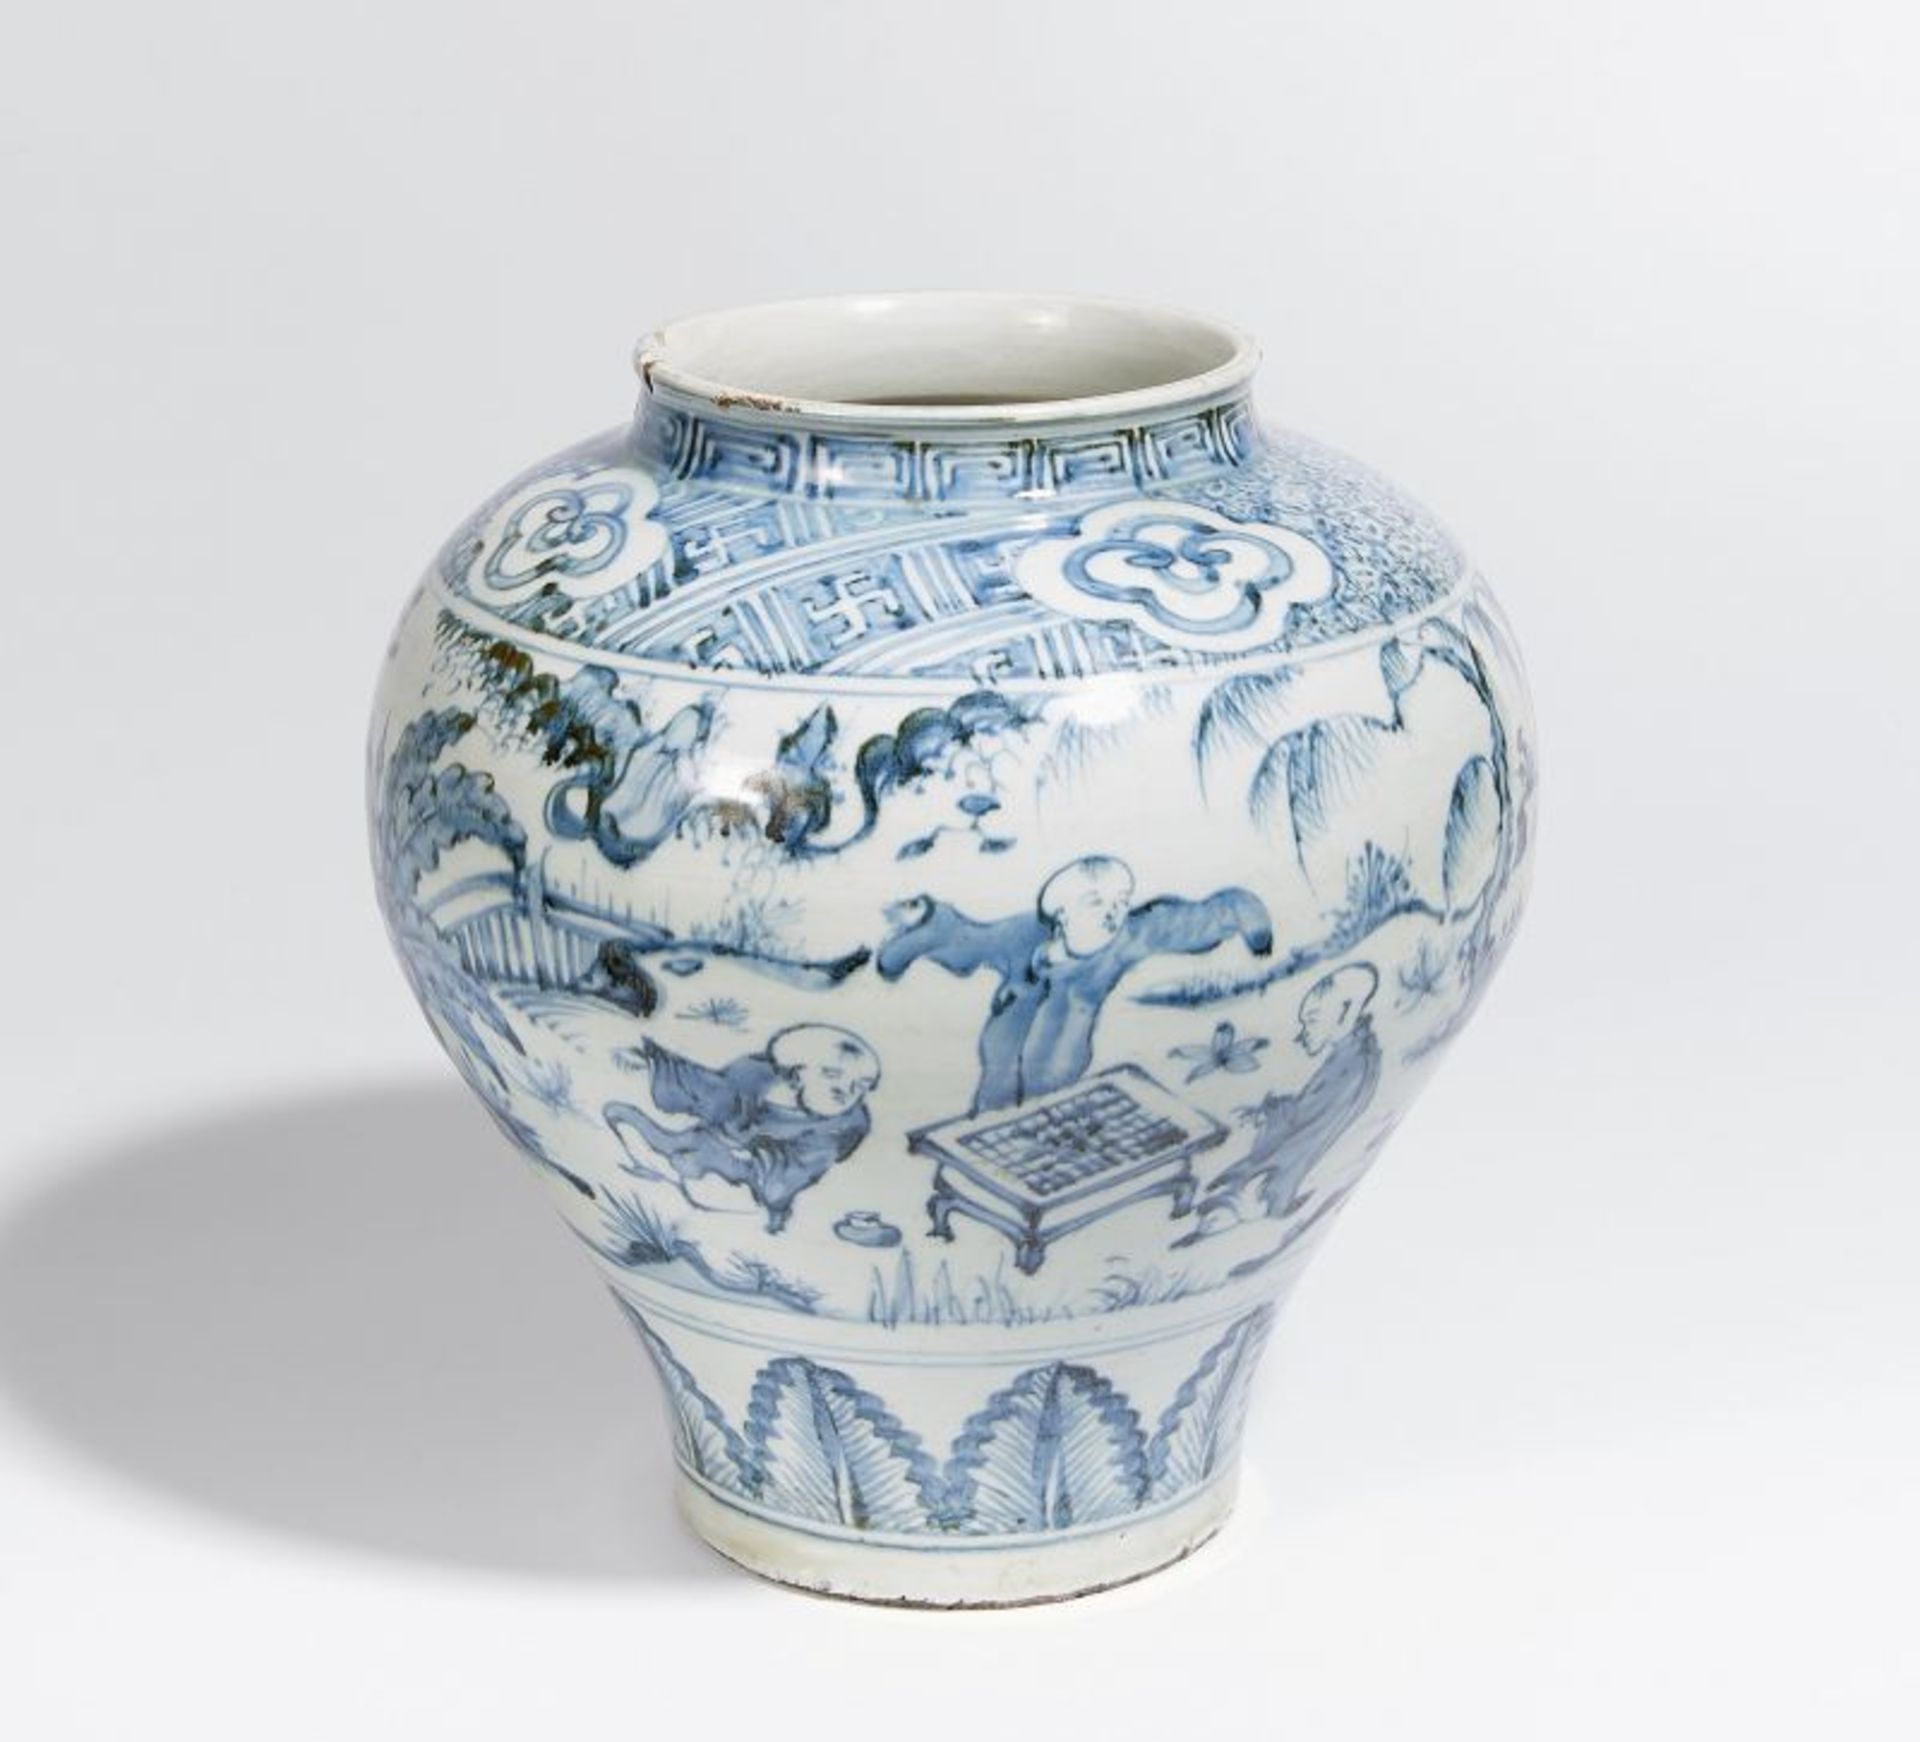 BAUCHIGE VASE MIT GO-SPIELERN. China. Ming-Dynastie. Porzellan, bemalt in Unterglasurblau. Drei - Bild 2 aus 2